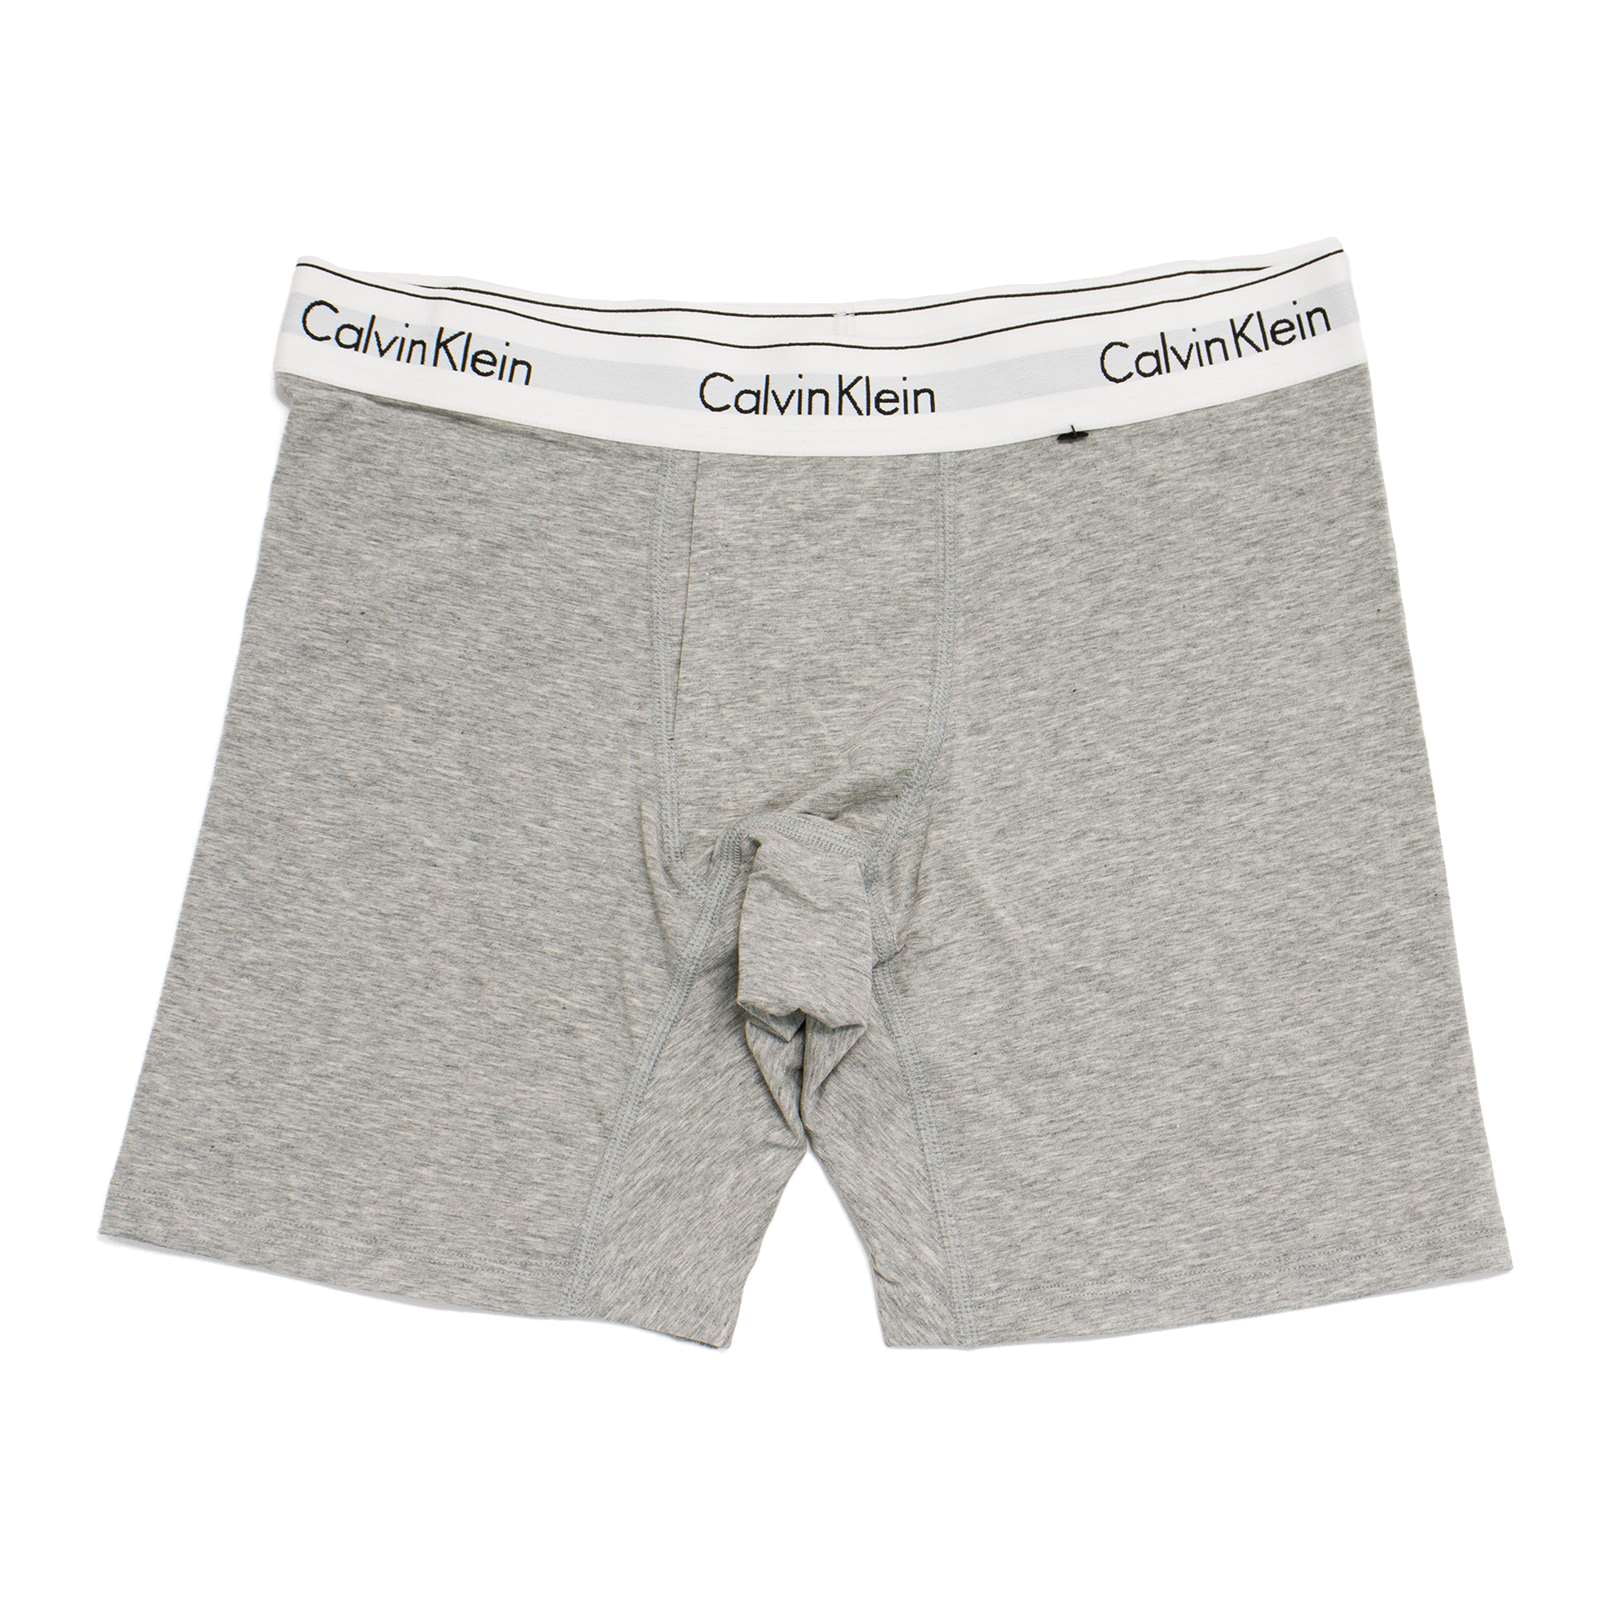 Calvin Klein L1743 Underwear Modern Cotton Boyshort Grey Heather Women's  Size S